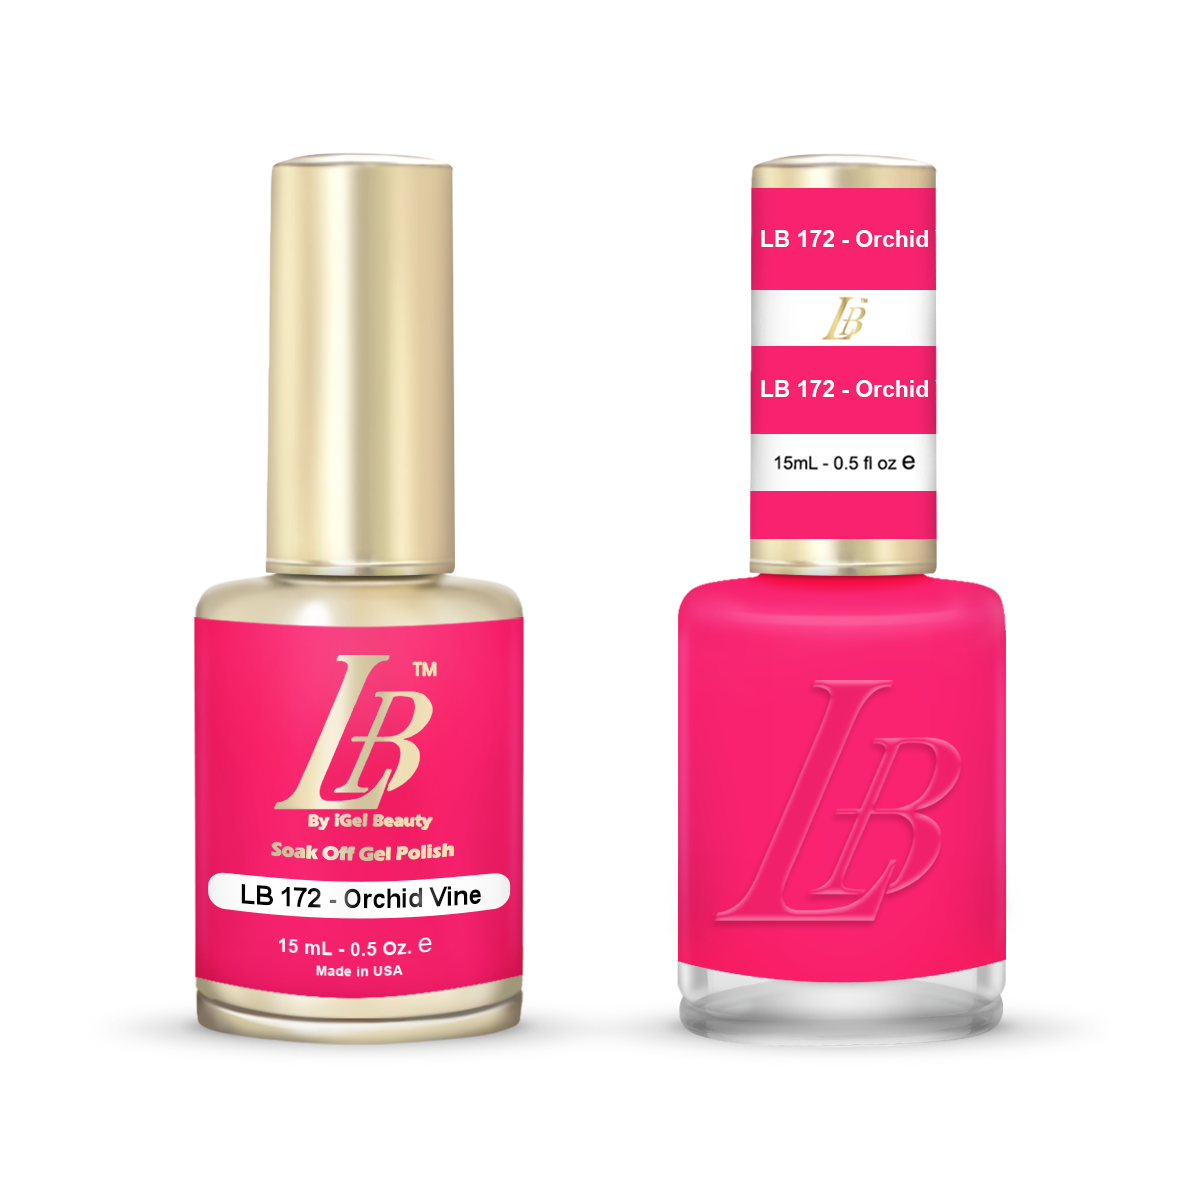 LB Duo - LB172 Orchid Vine